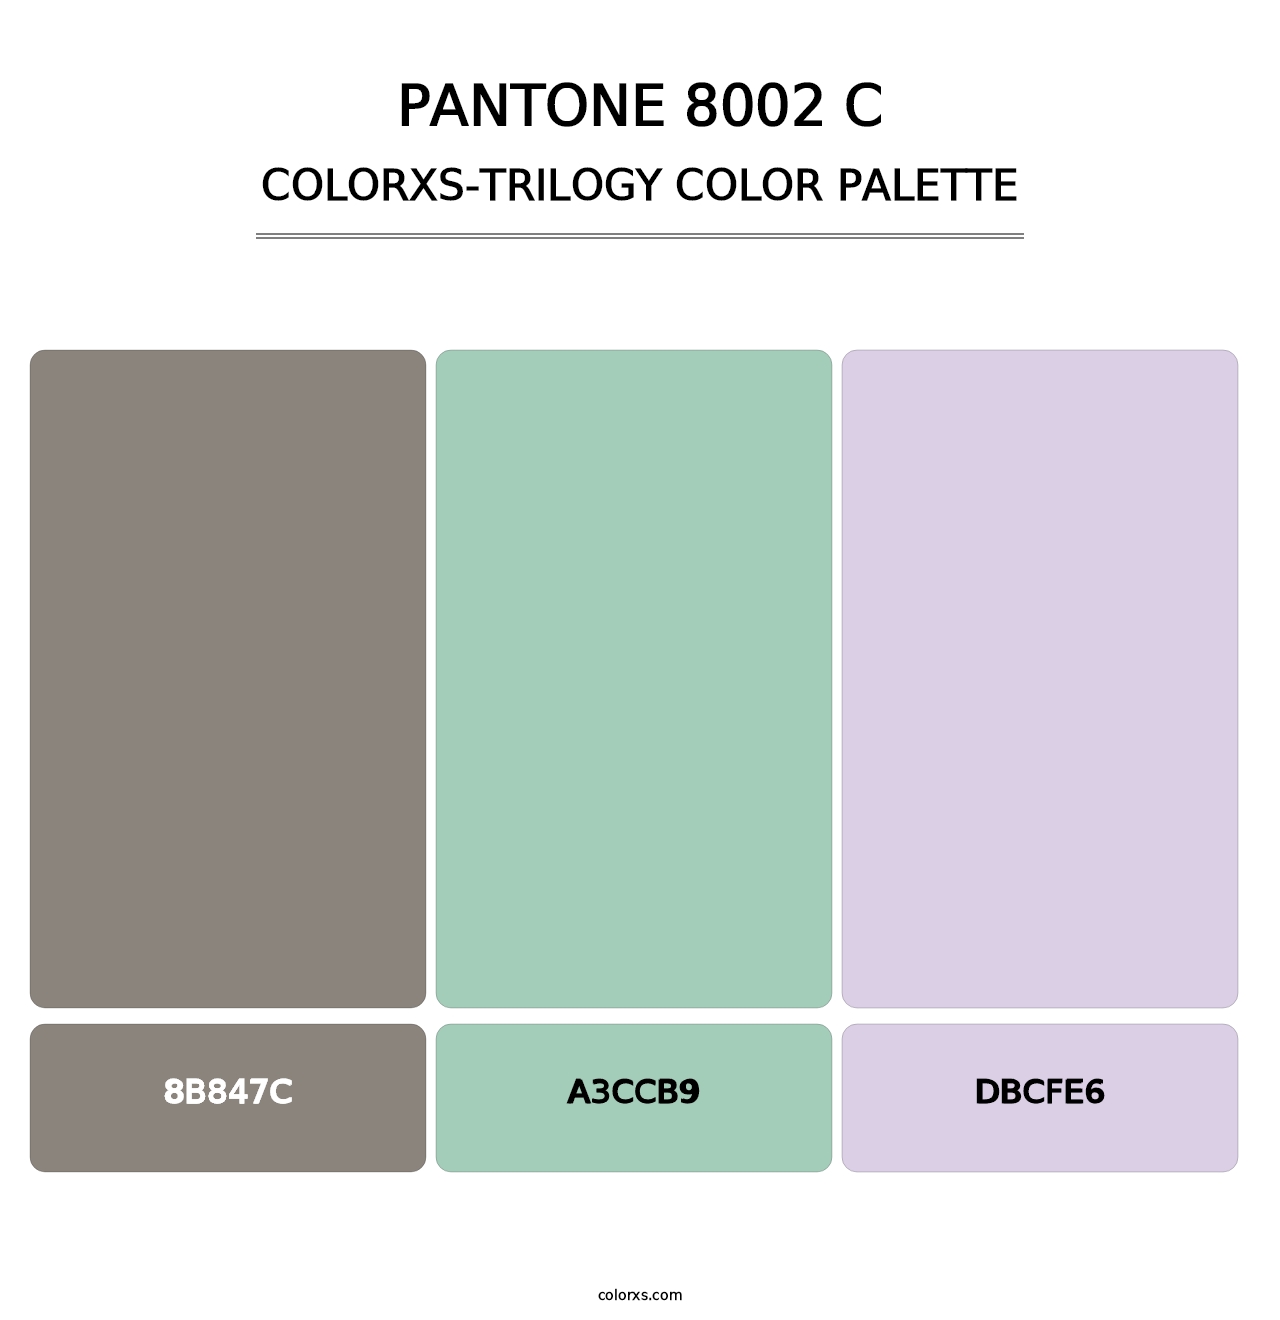 PANTONE 8002 C - Colorxs Trilogy Palette